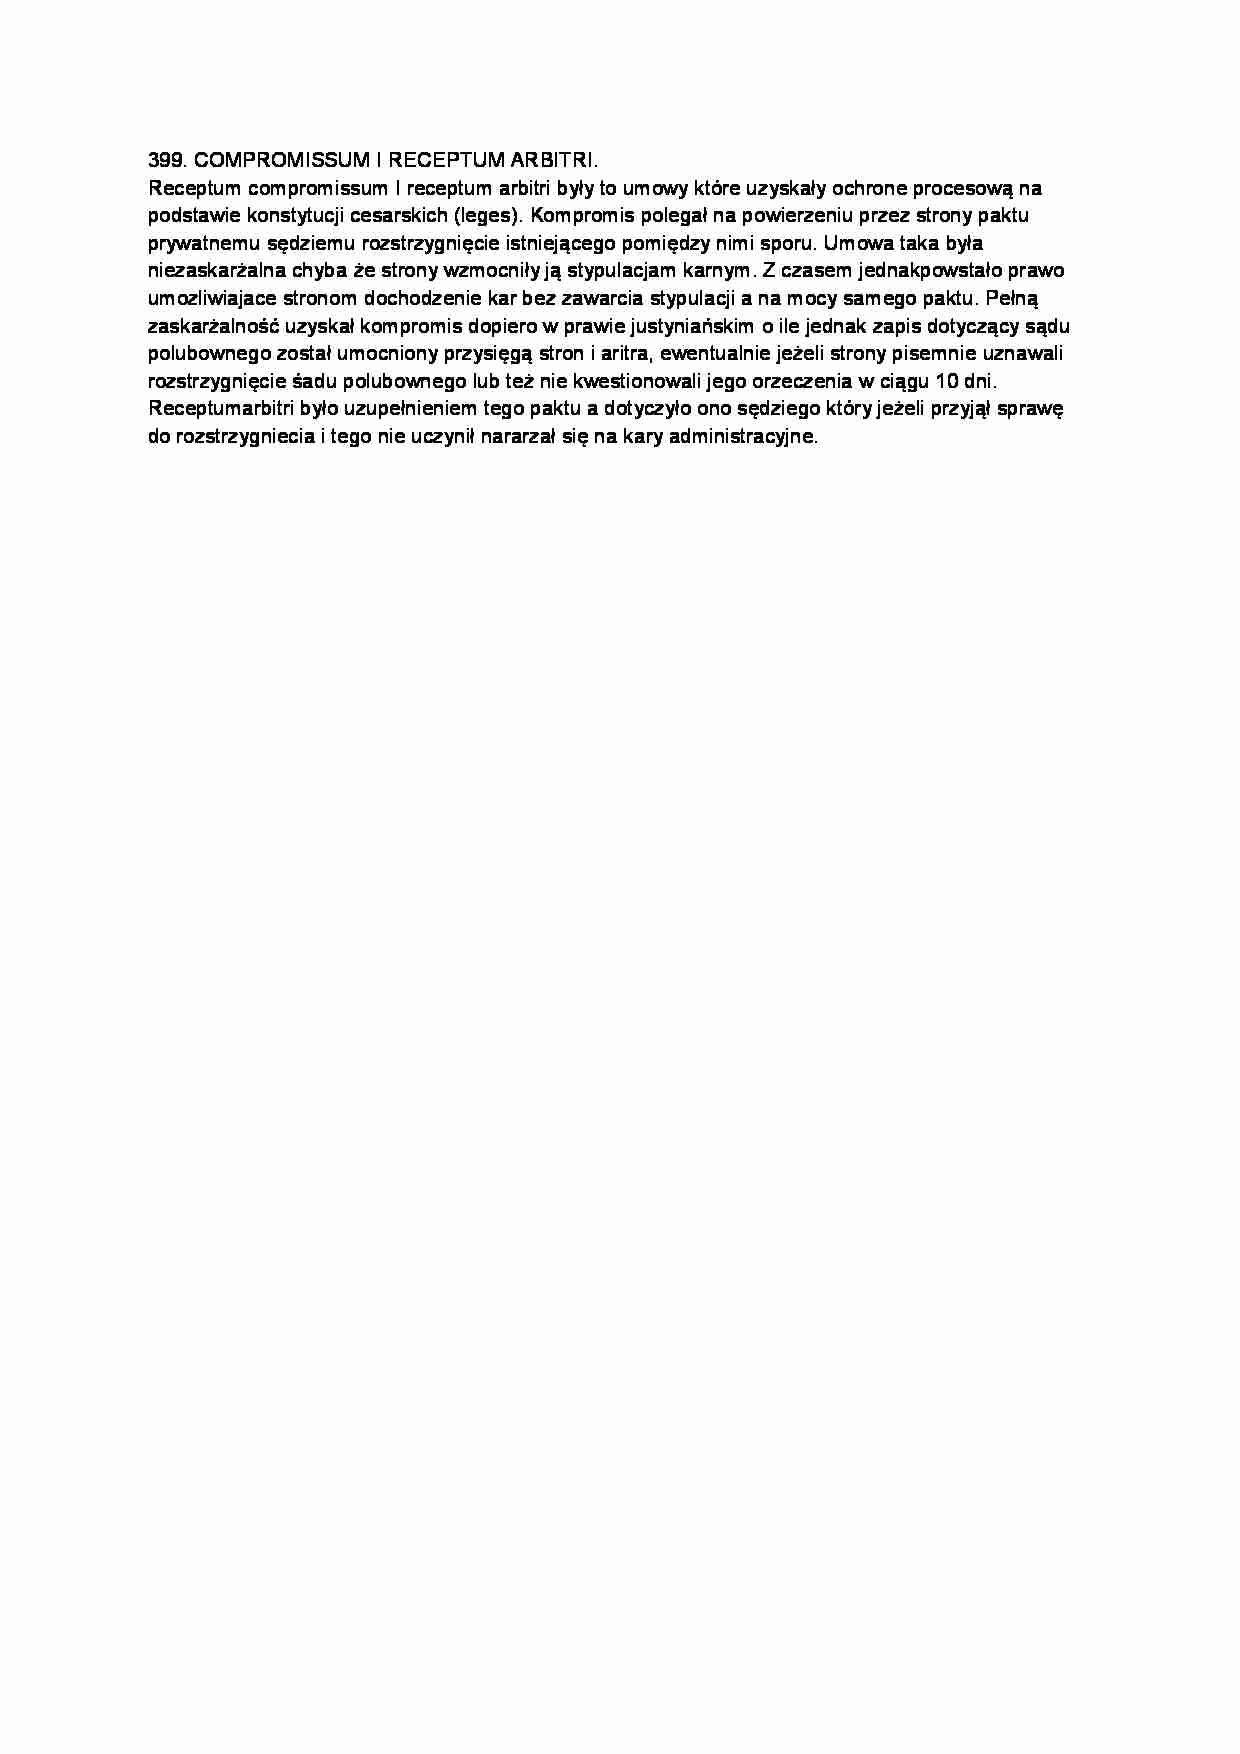 COMPROMISSUM I RECEPTUM ARBITRI-opracowanie - strona 1